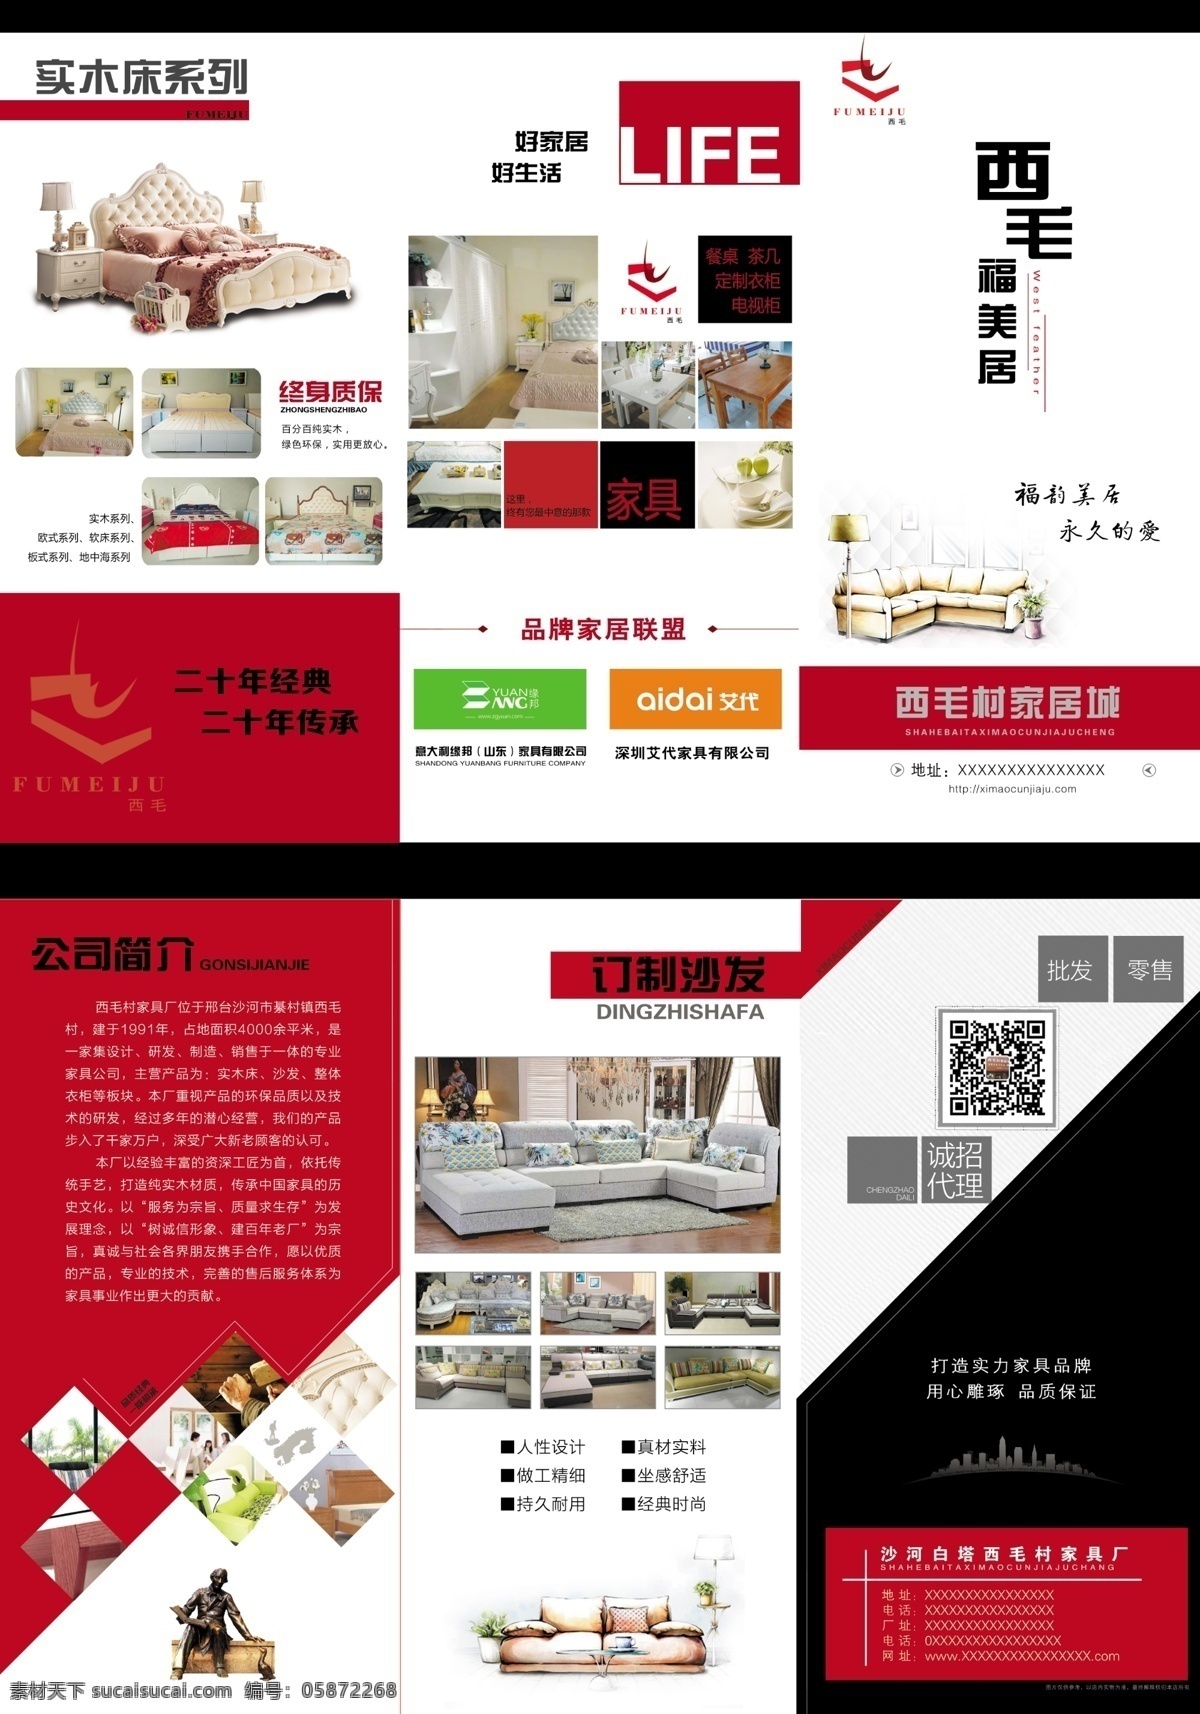 家具三折页 家具 折页 三折页 黑白红 沙发 床 实木床 订制沙发 家居 设计素材 dm宣传单